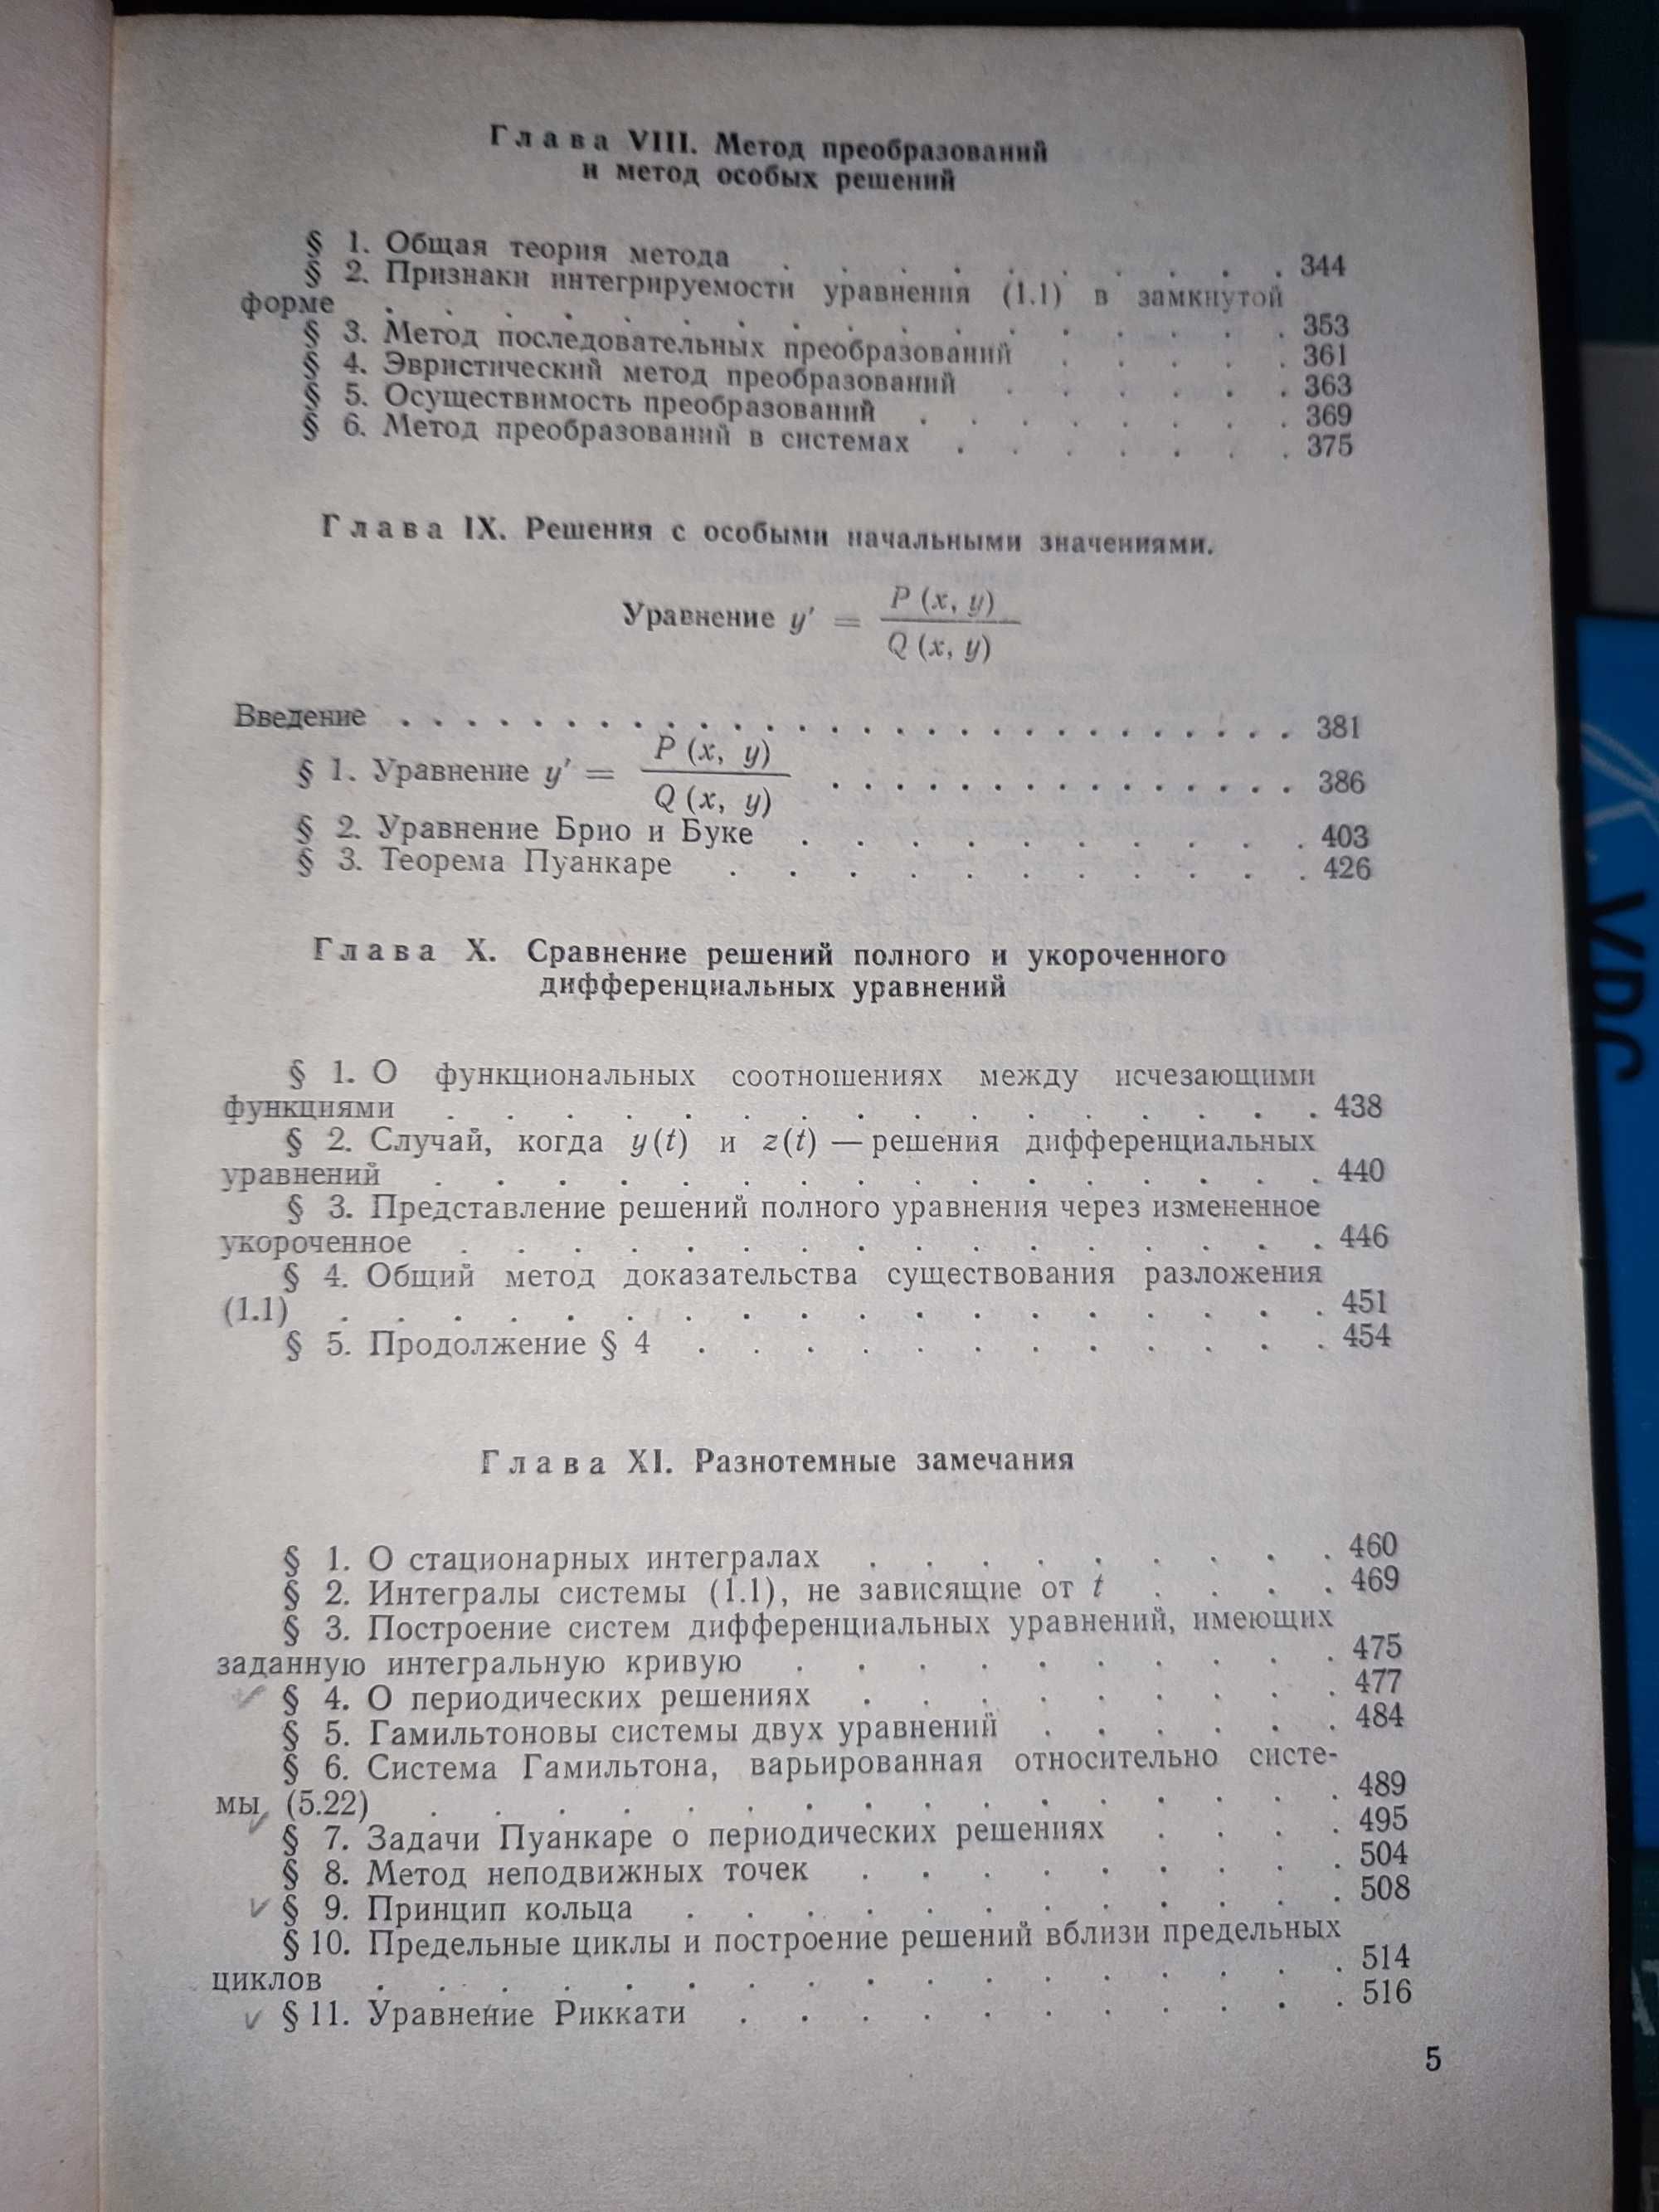 Книга для чтения по общему курсу дифференциальных уравнений Еругин